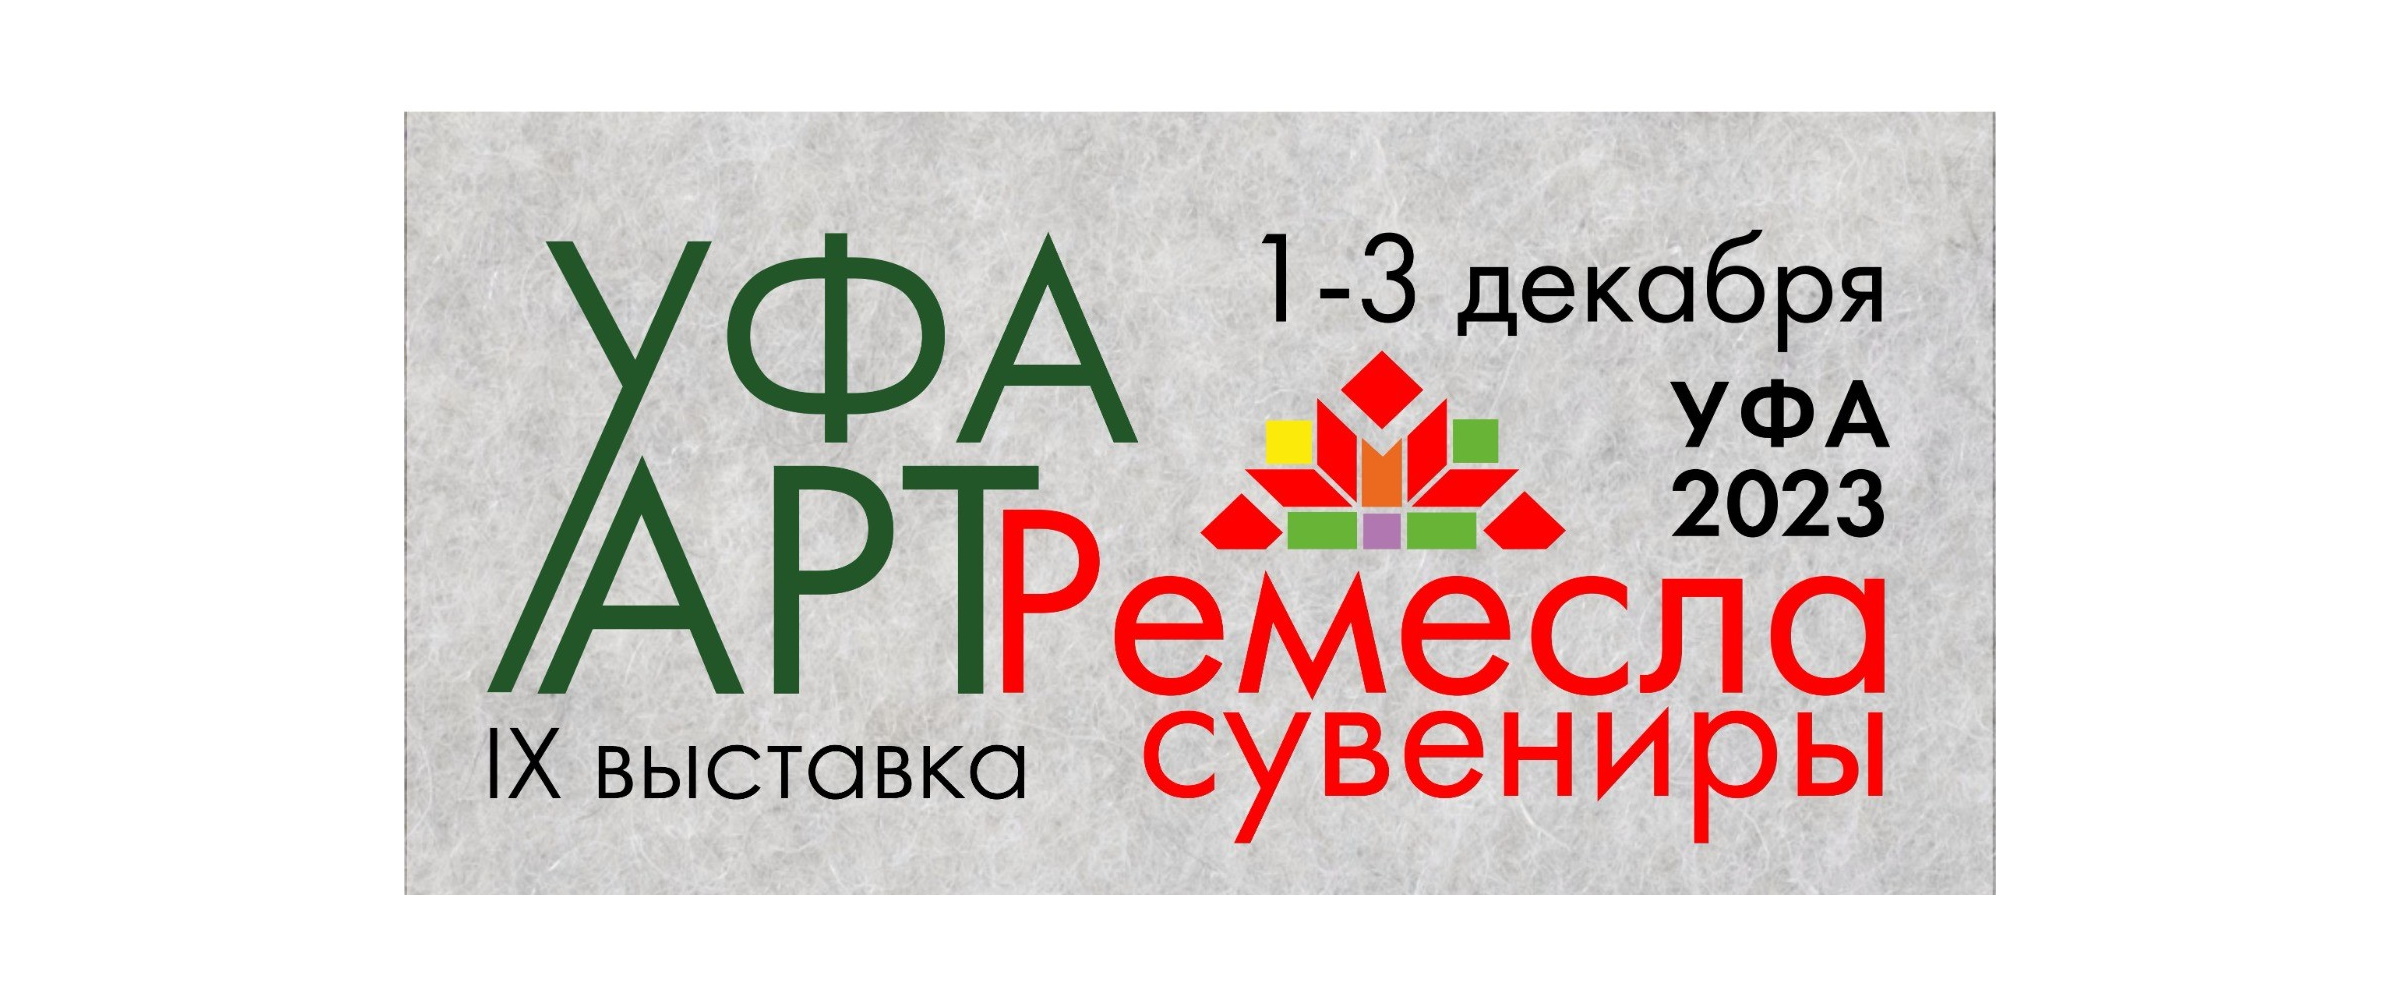 В Республике Башкортостан пройдет IX выставка «УФА. АРТ. РЕМЕСЛА. СУВЕНИРЫ»